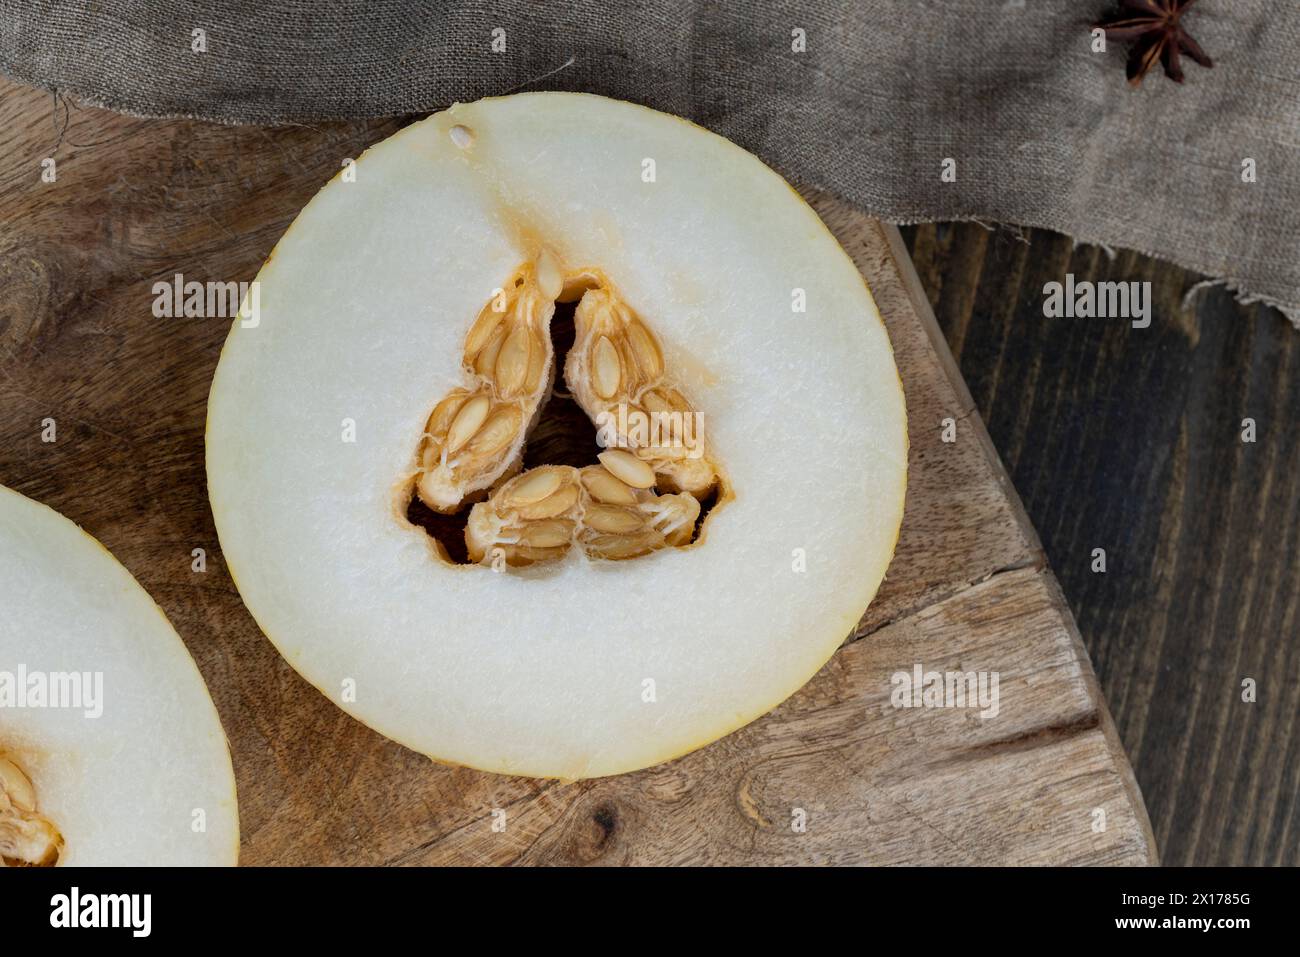 In Scheiben geschnittene süße, hellgelbe Melone, kochen mit goldener Melone in Nahaufnahme Stockfoto